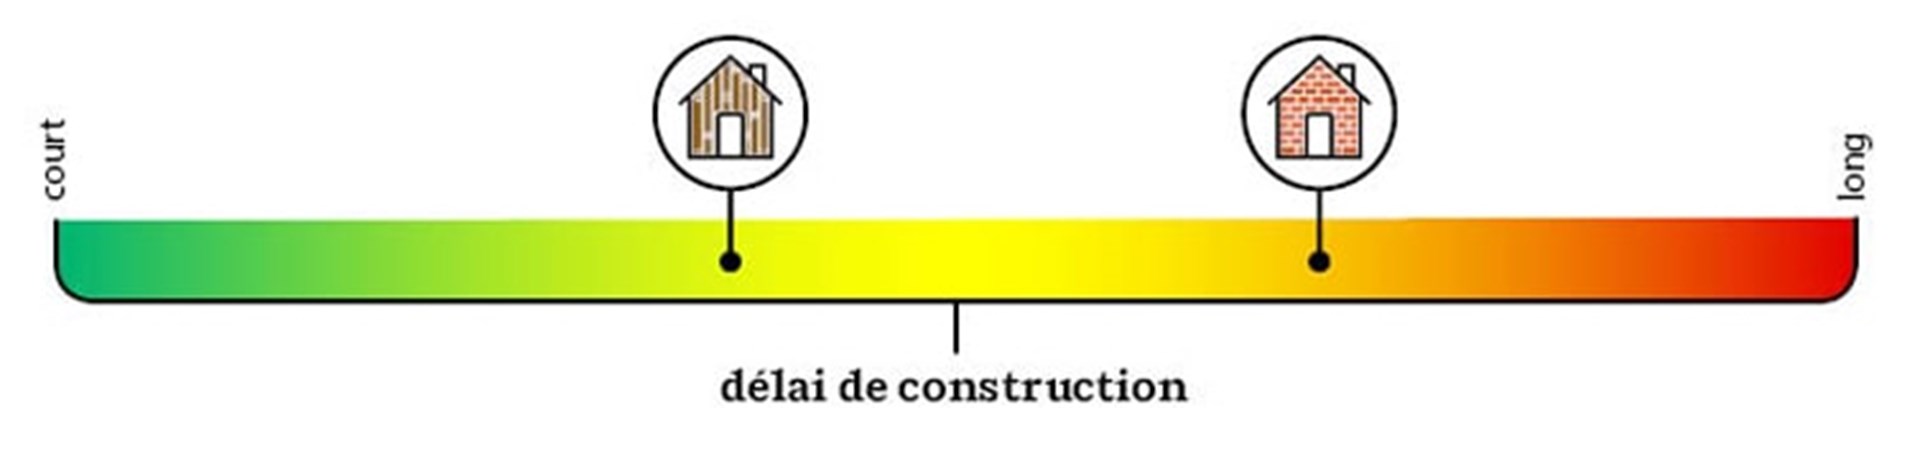 délai de construction ossature bois